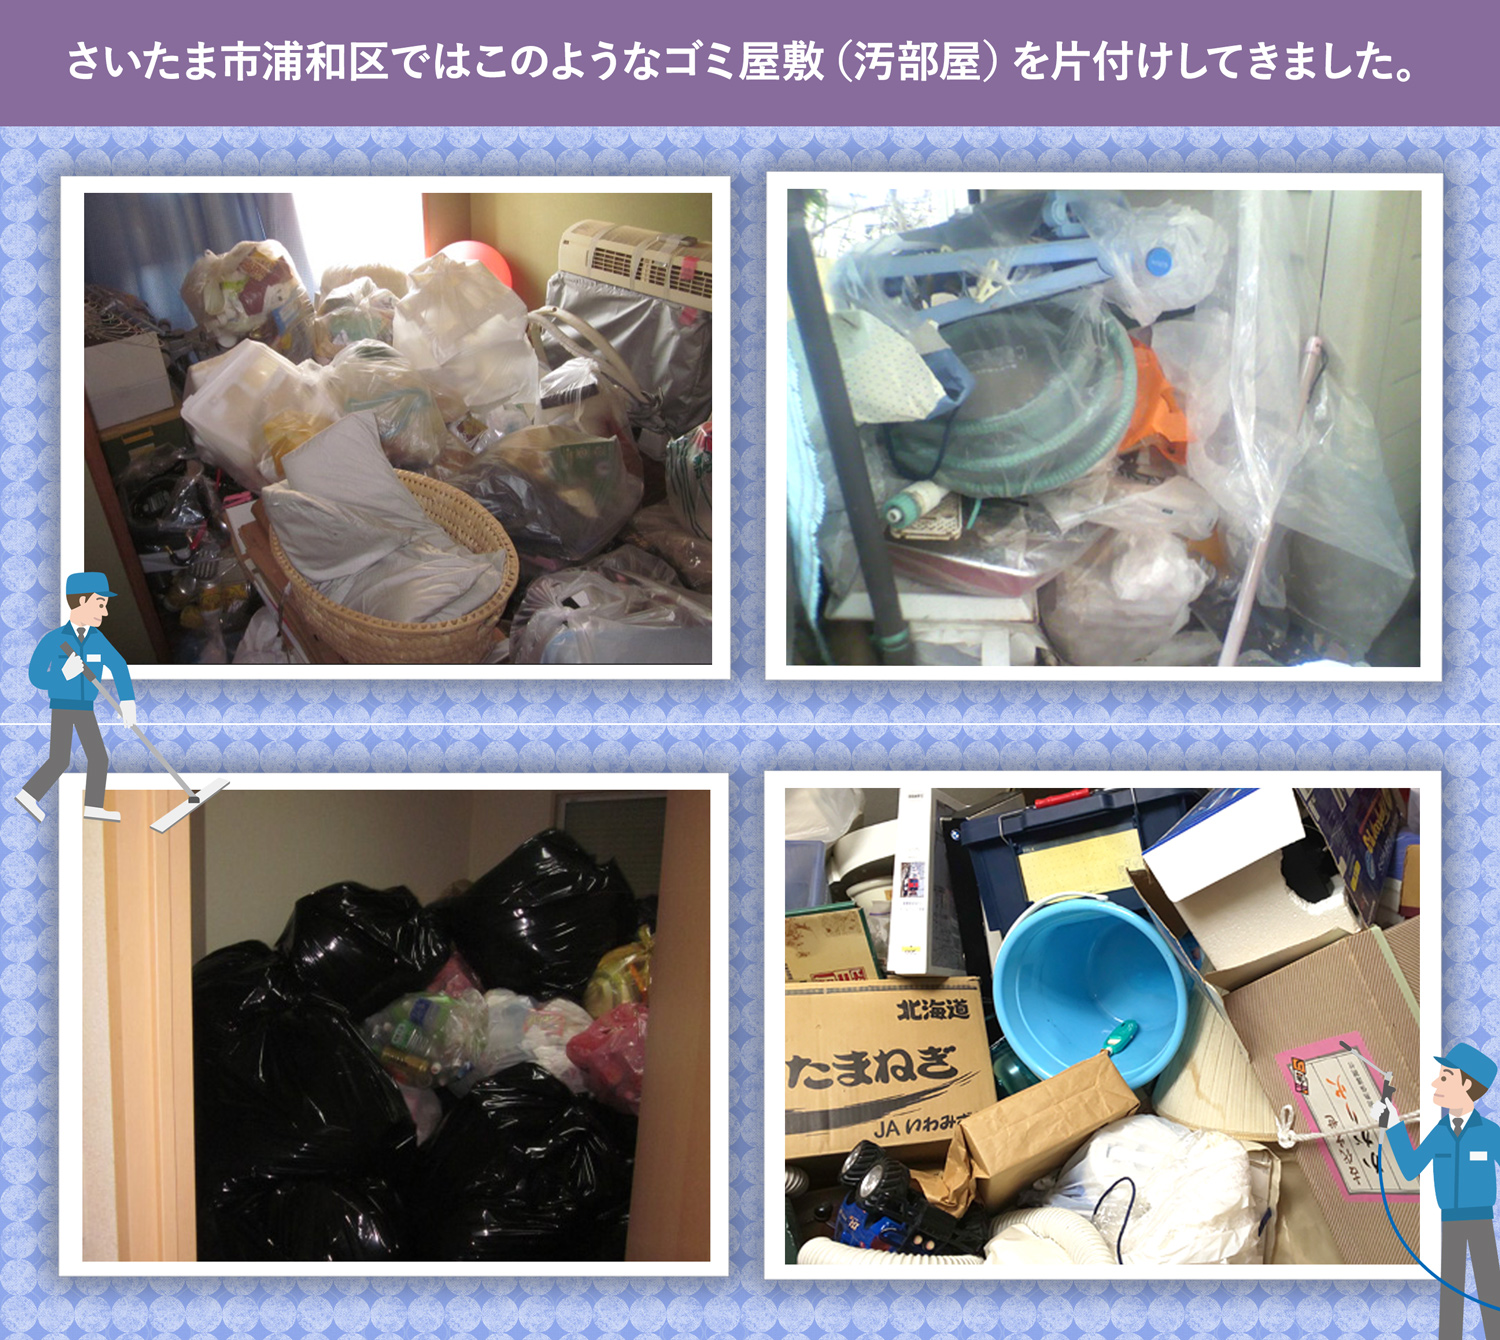 さいたま市浦和区で行ったで行ったごみ屋敷・汚部屋の片付けの一例